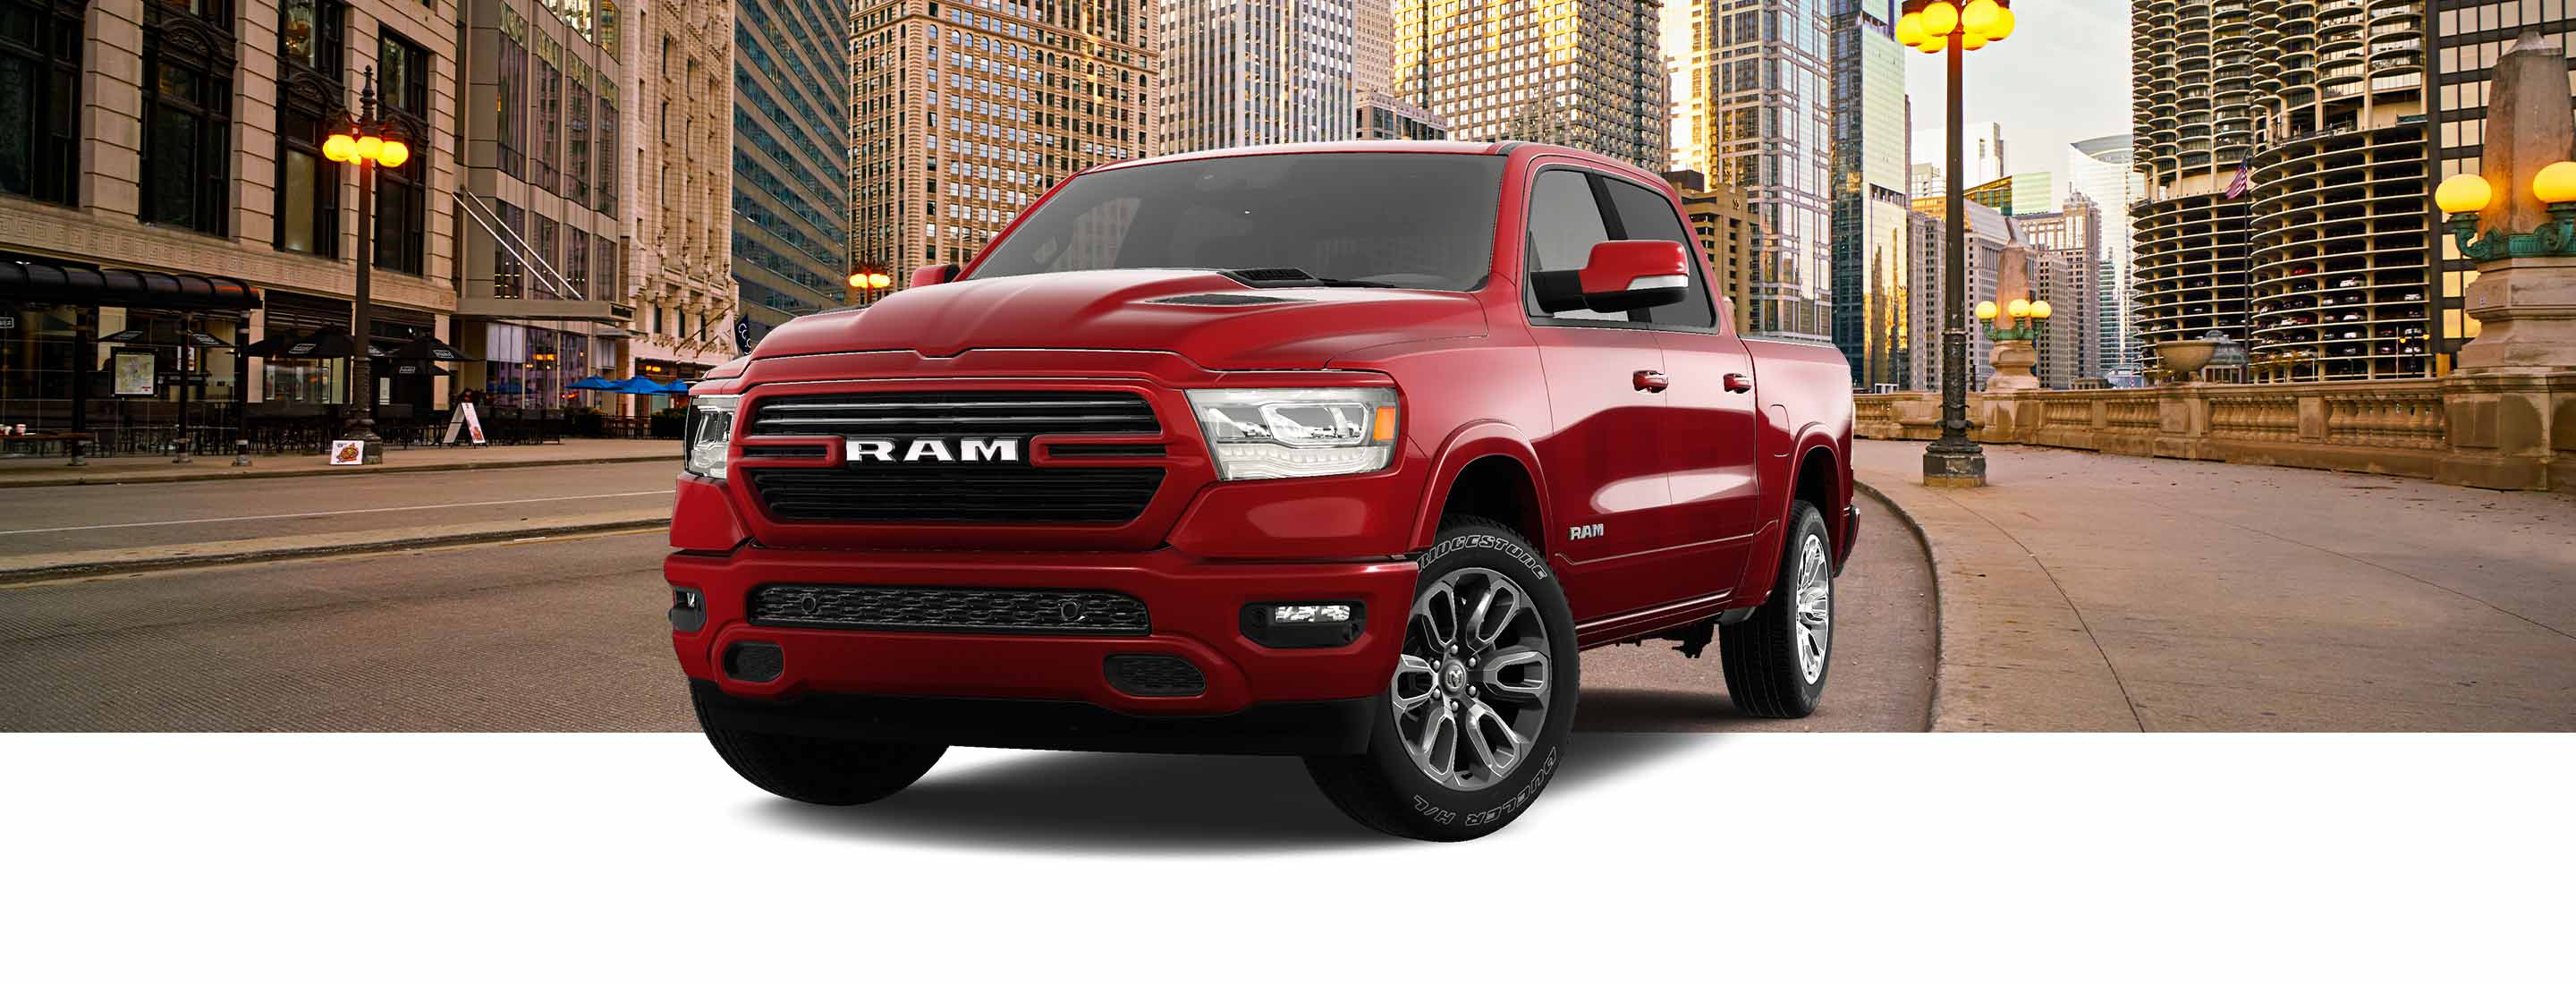 Una Ram 1500 Laramie Crew Cab 2023 roja con el paquete de apariencia deportiva, con una calle urbana metropolitana de fondo.